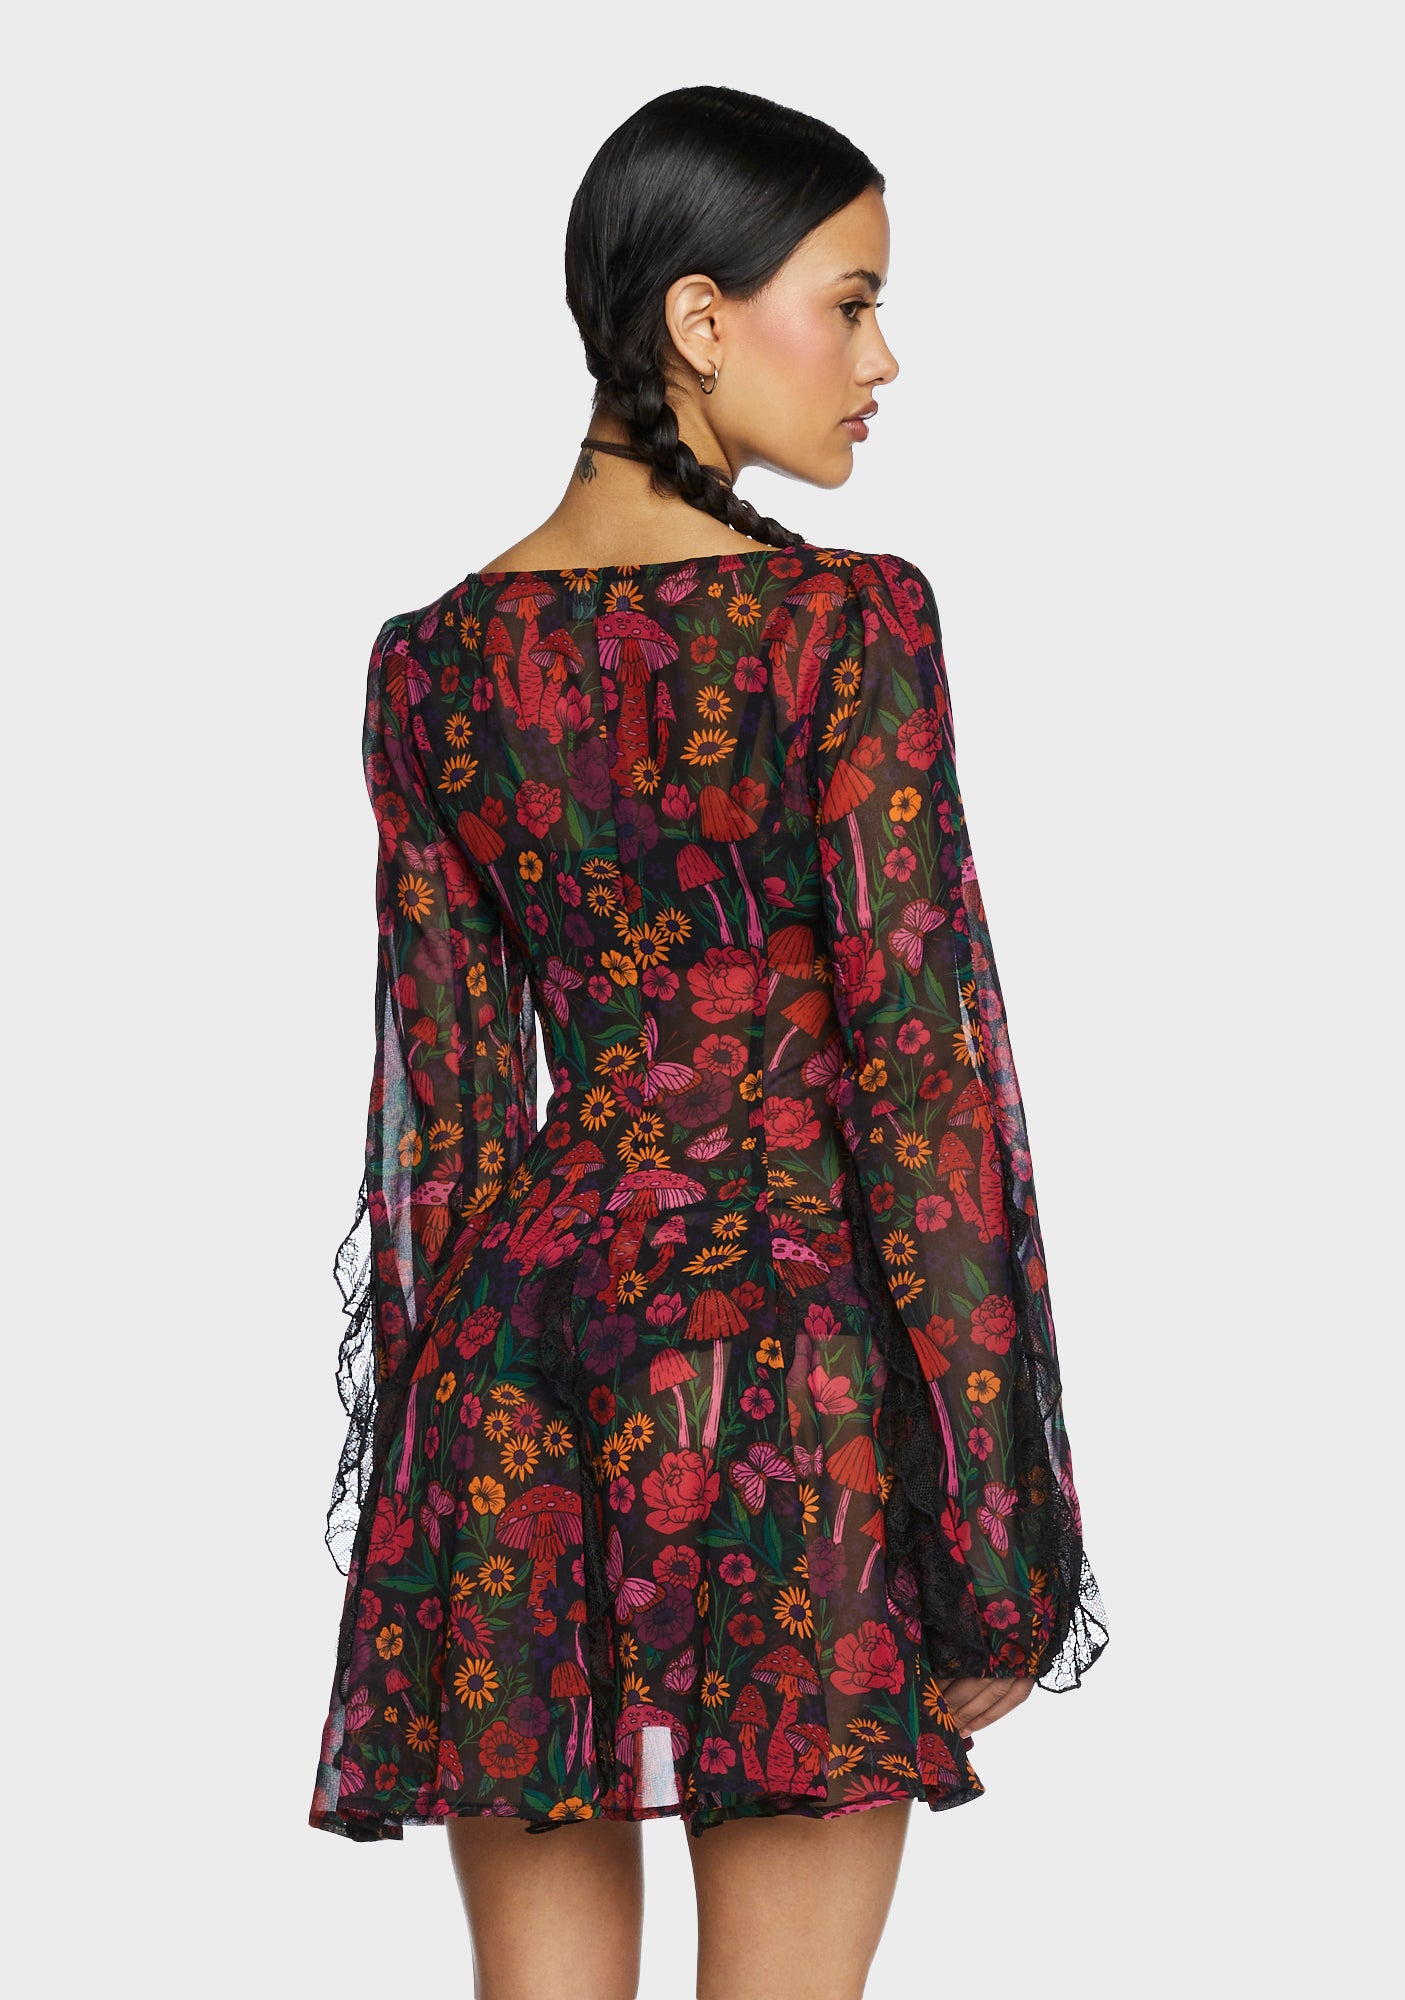 Current Mood Floral Mushroom Chiffon Sheer Mini Dress - Multi 